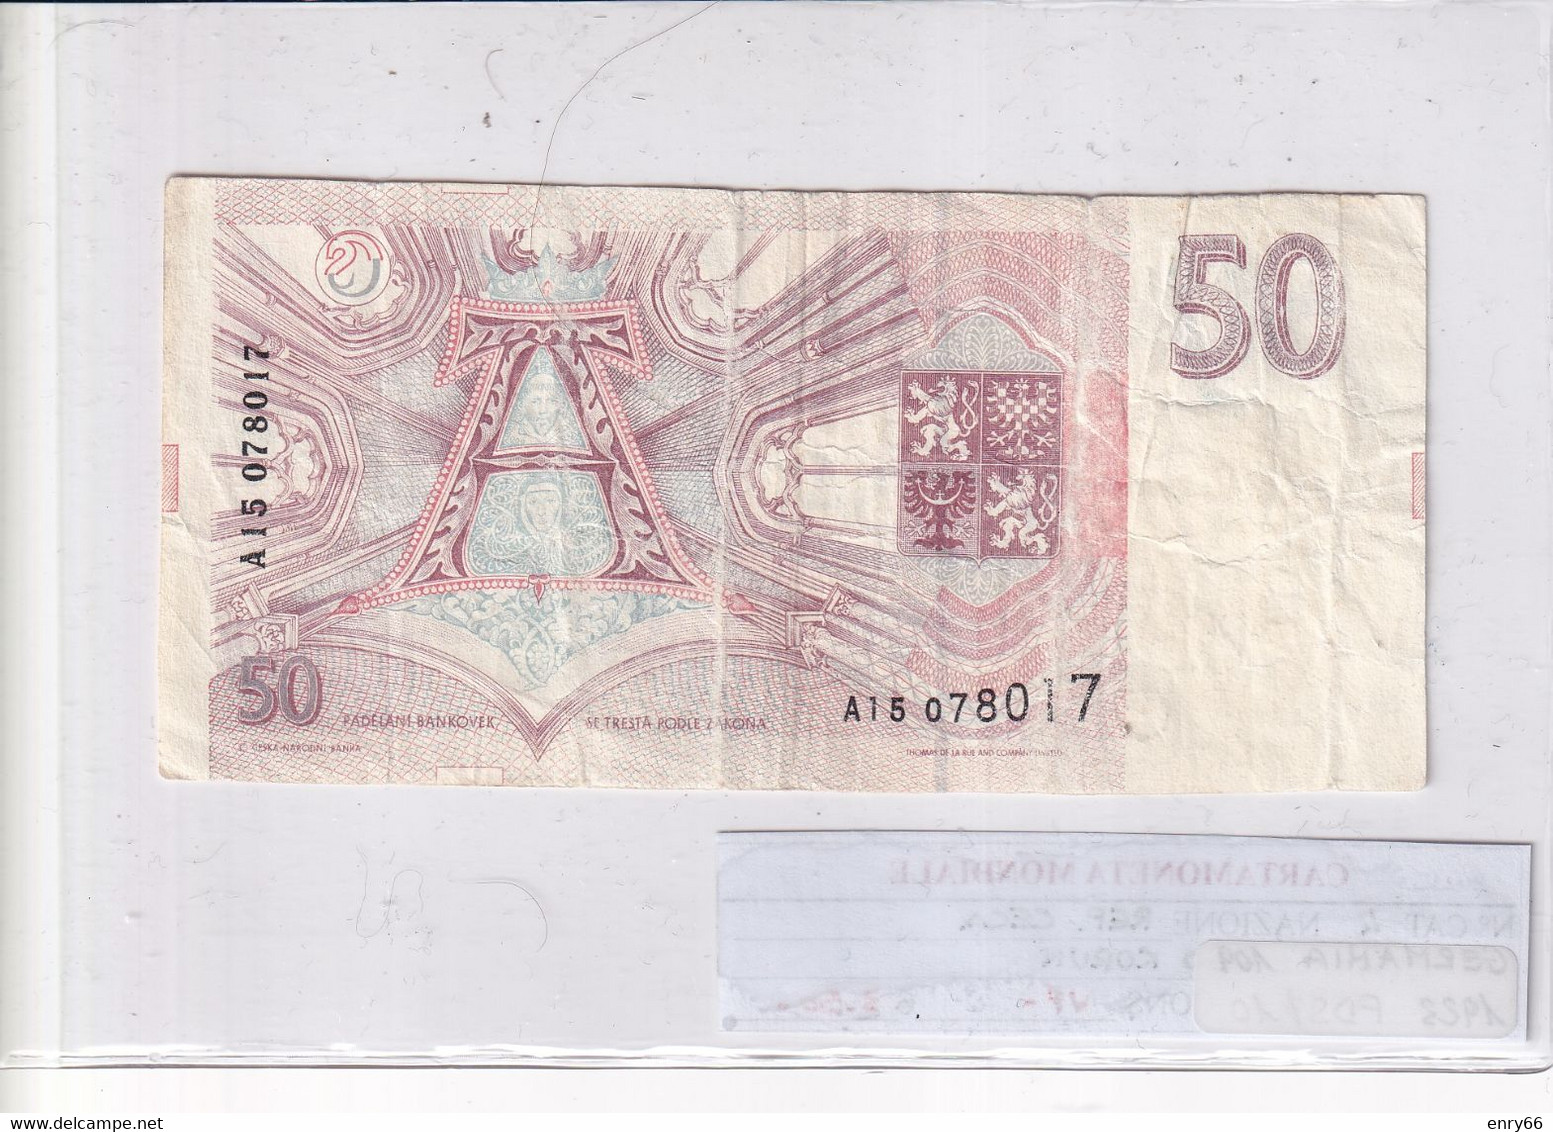 REPUBBLICA CECA 50 KORUN 1993 P 4 - Czech Republic